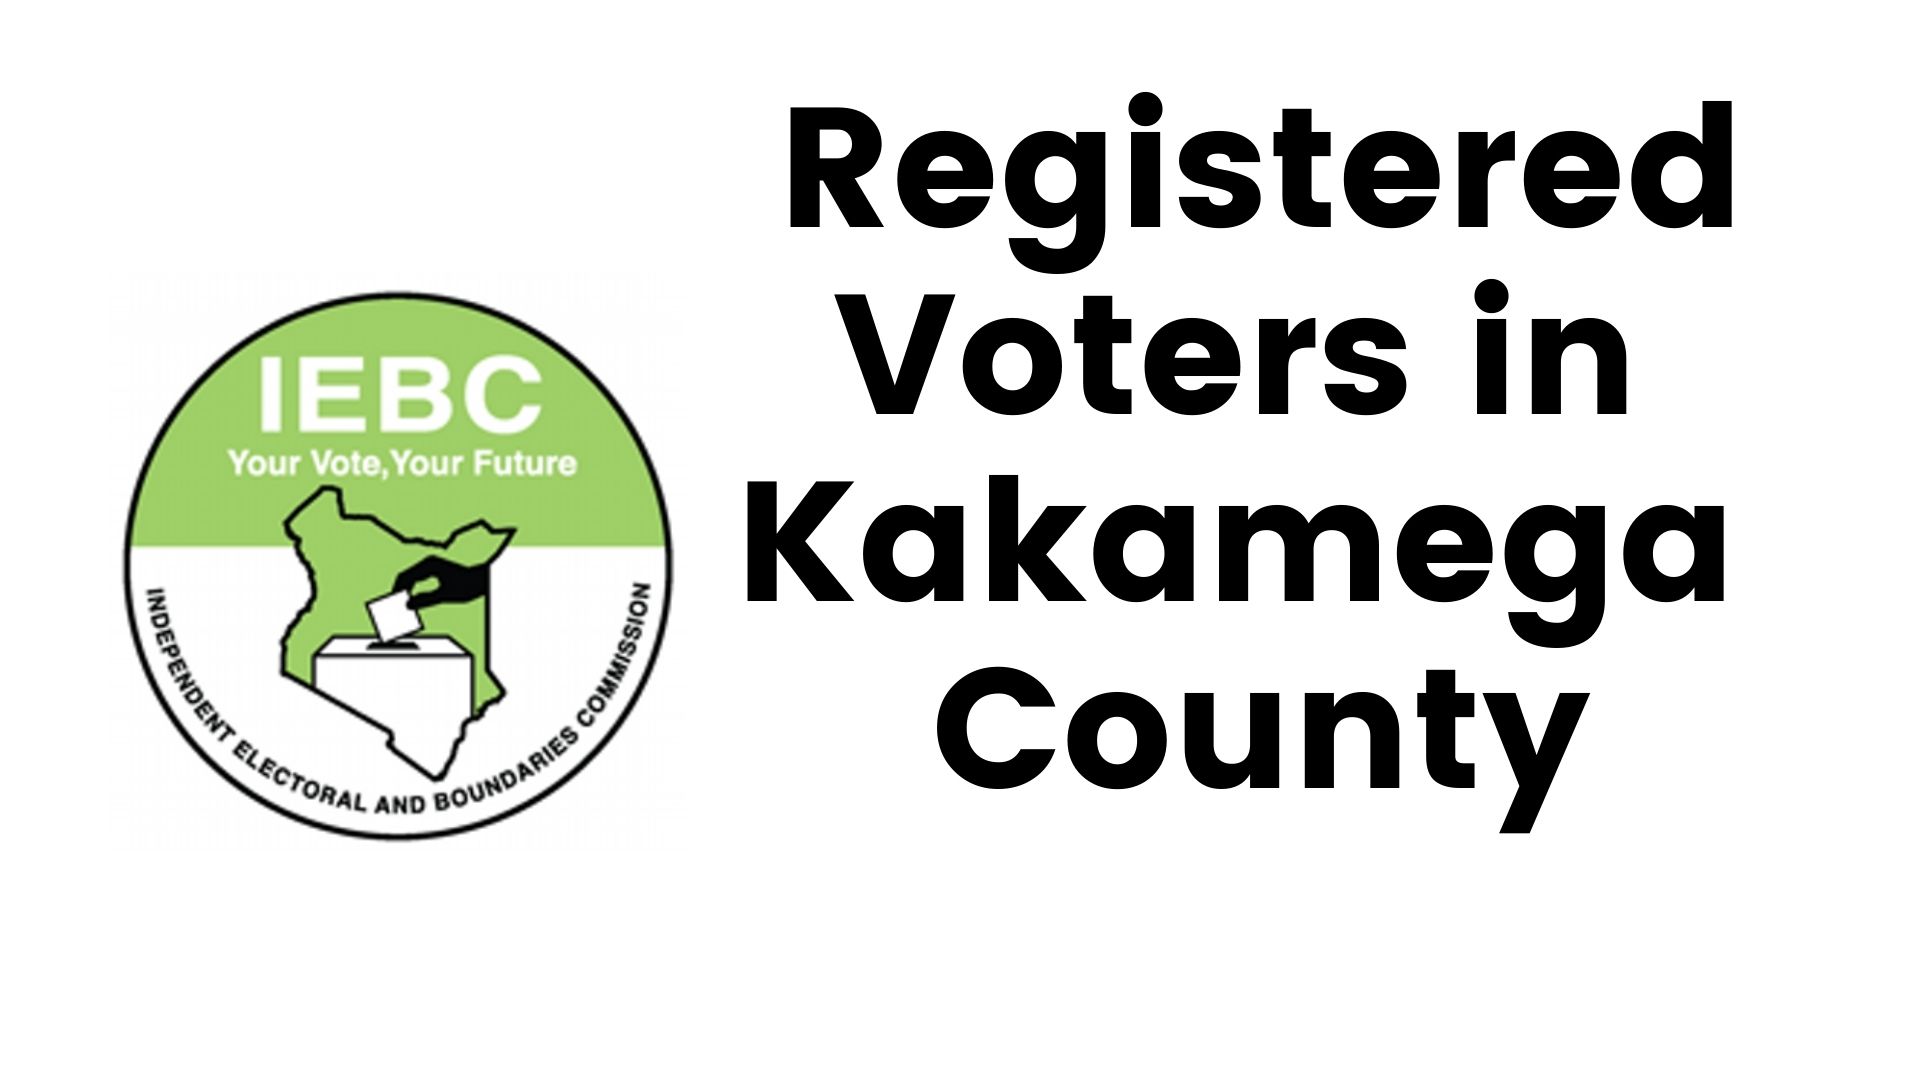 IEBC Kakamega County Registered Voters